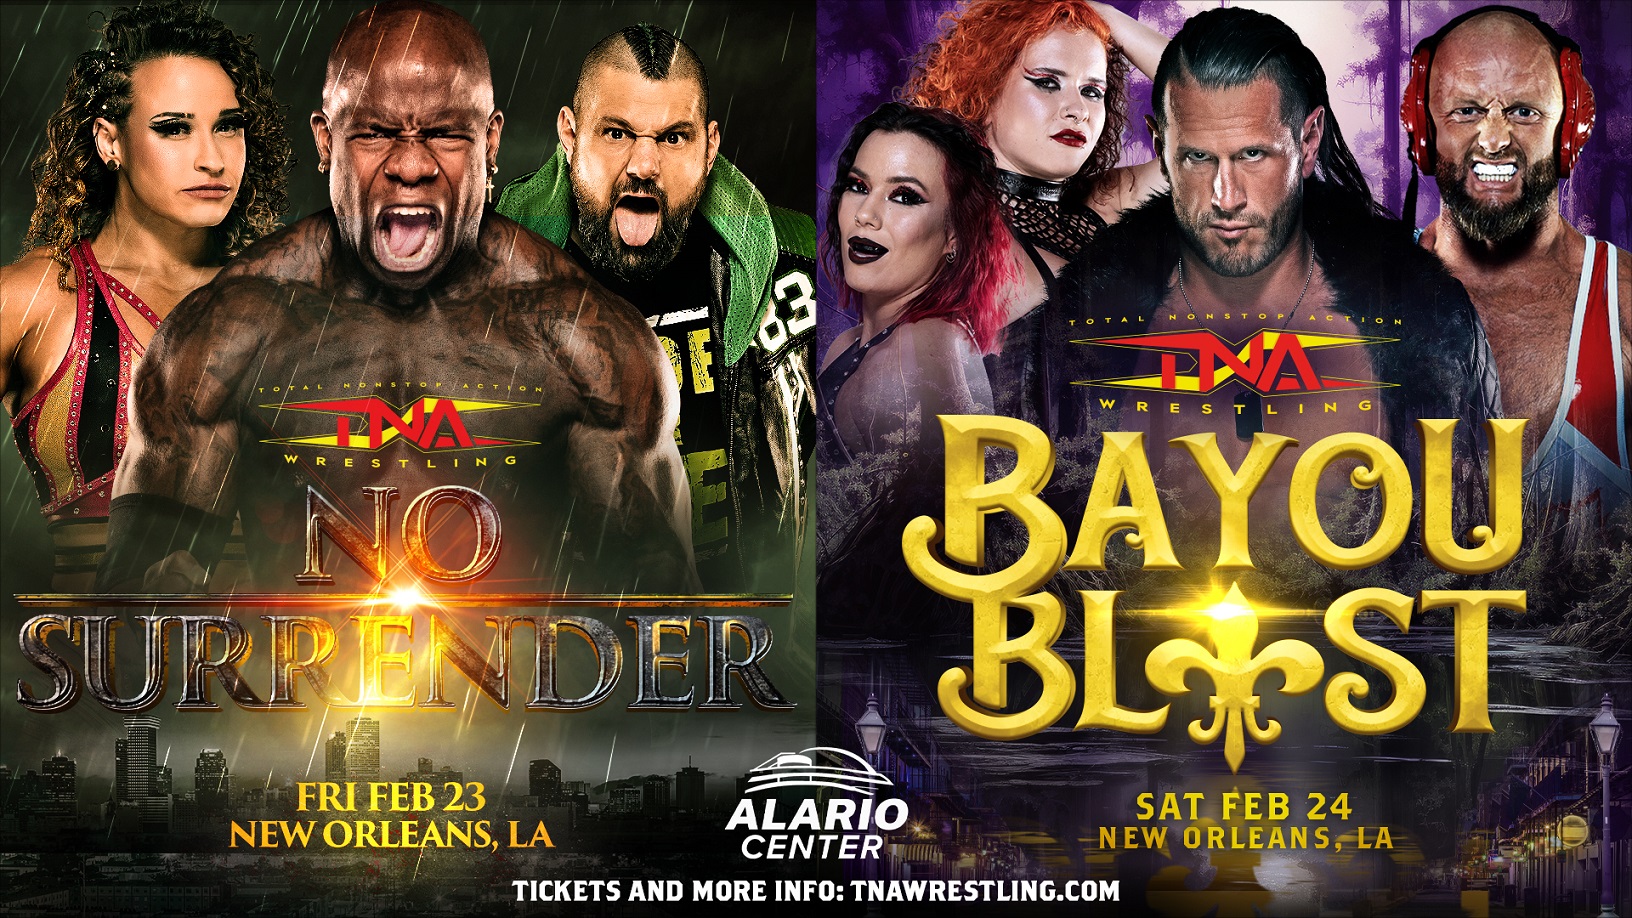 Titanium Ticket Package Details for TNA No Surrender & Bayou Blast in New Orleans – TNA Wrestling